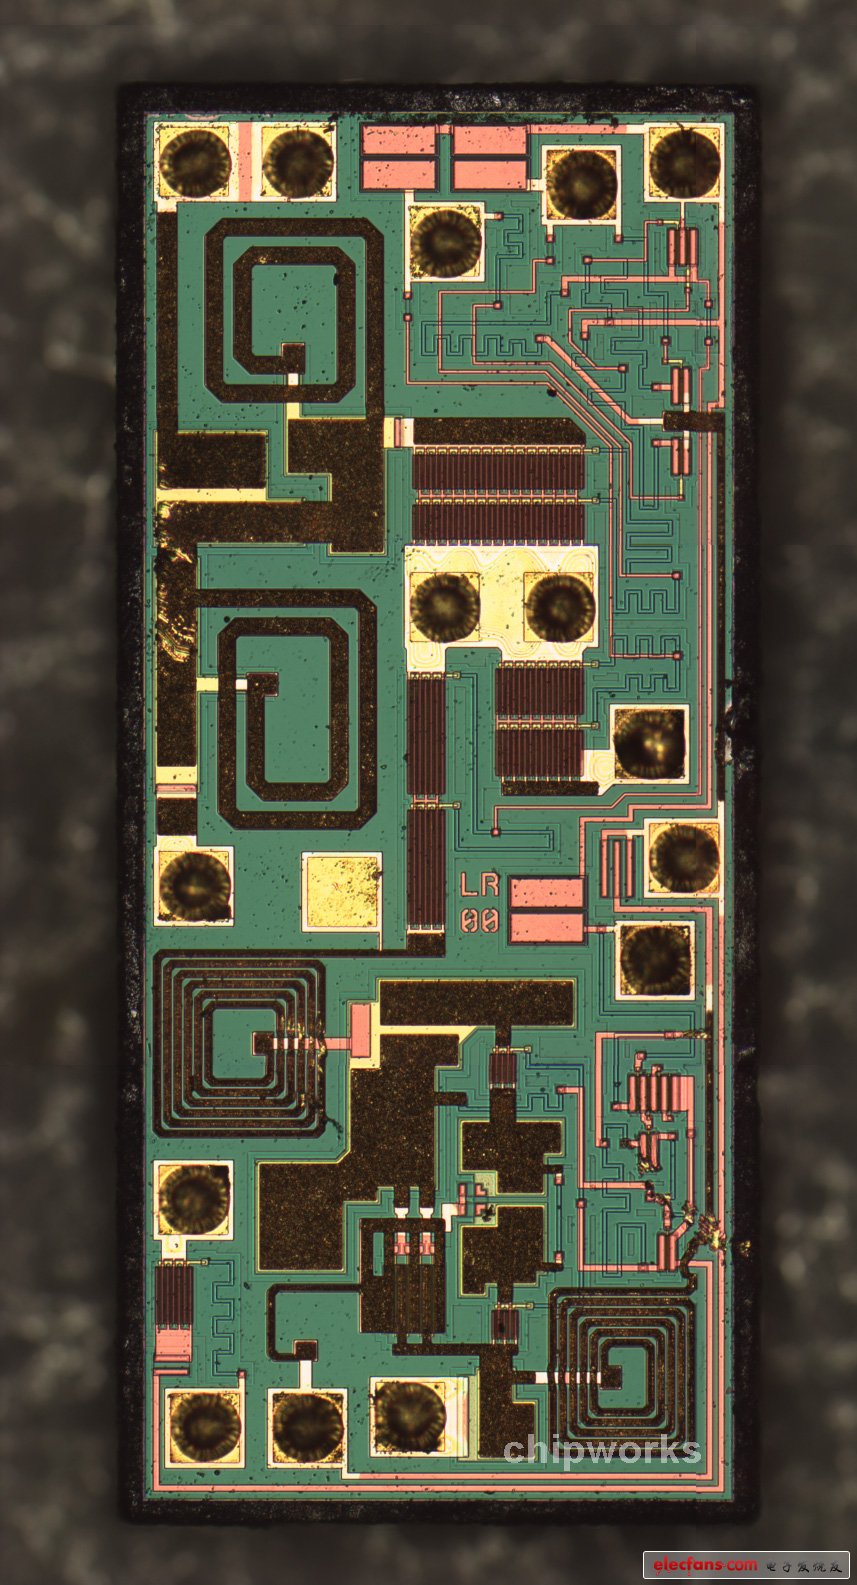 　村田2.4 GHz 带通滤波器芯片